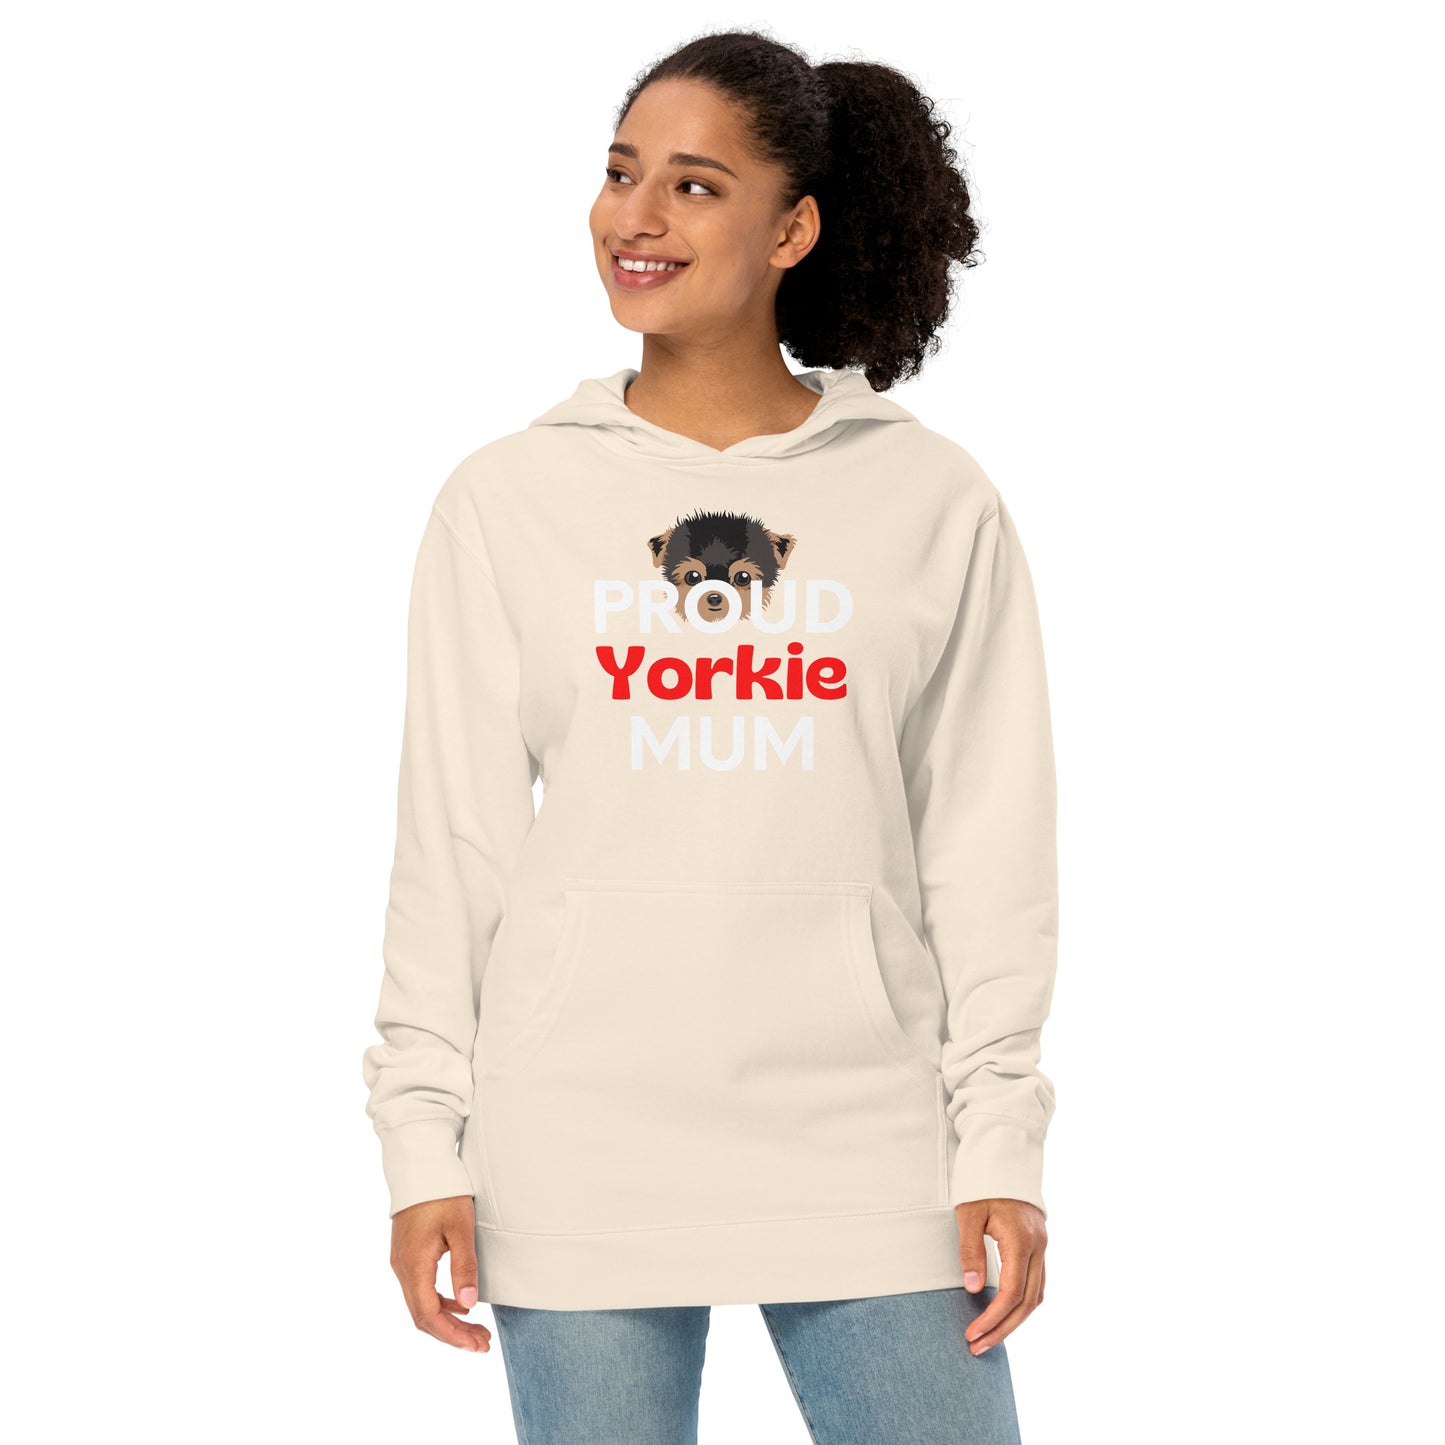 Women's hoodie 'PROUD Yorkie MUM'